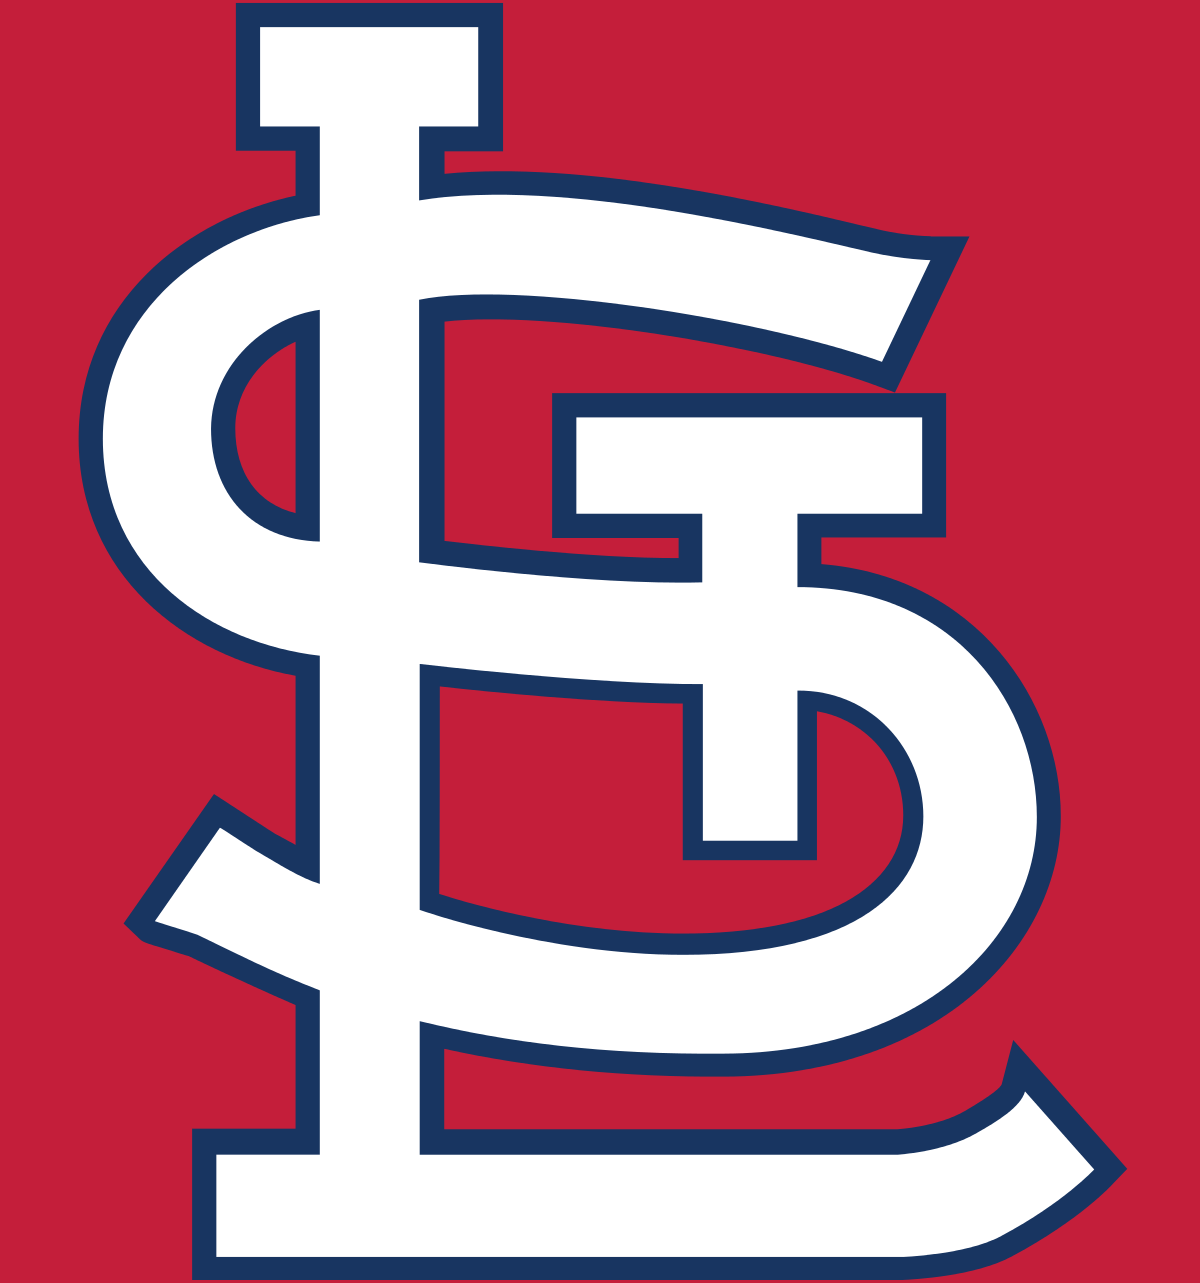 Cardinals Baseball Logo - 2018 St. Louis Cardinals season